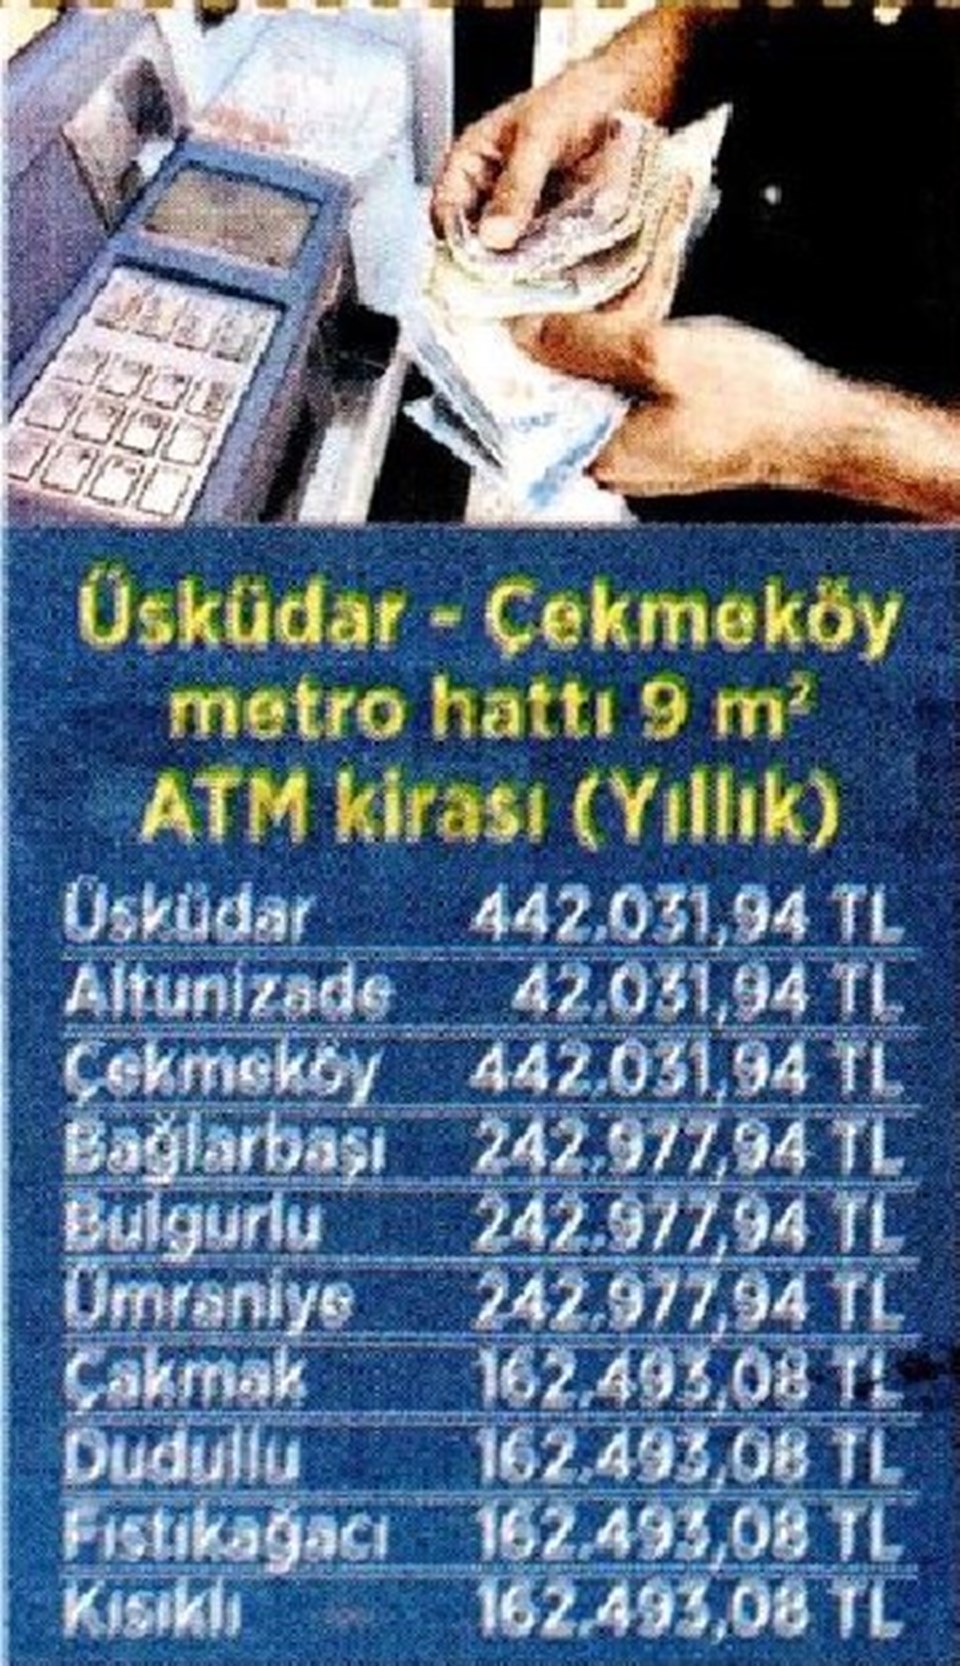 ATM kiraları lüks dükkanlarla yarışıyor (500 bin TL'ye çıkıyor) - 1